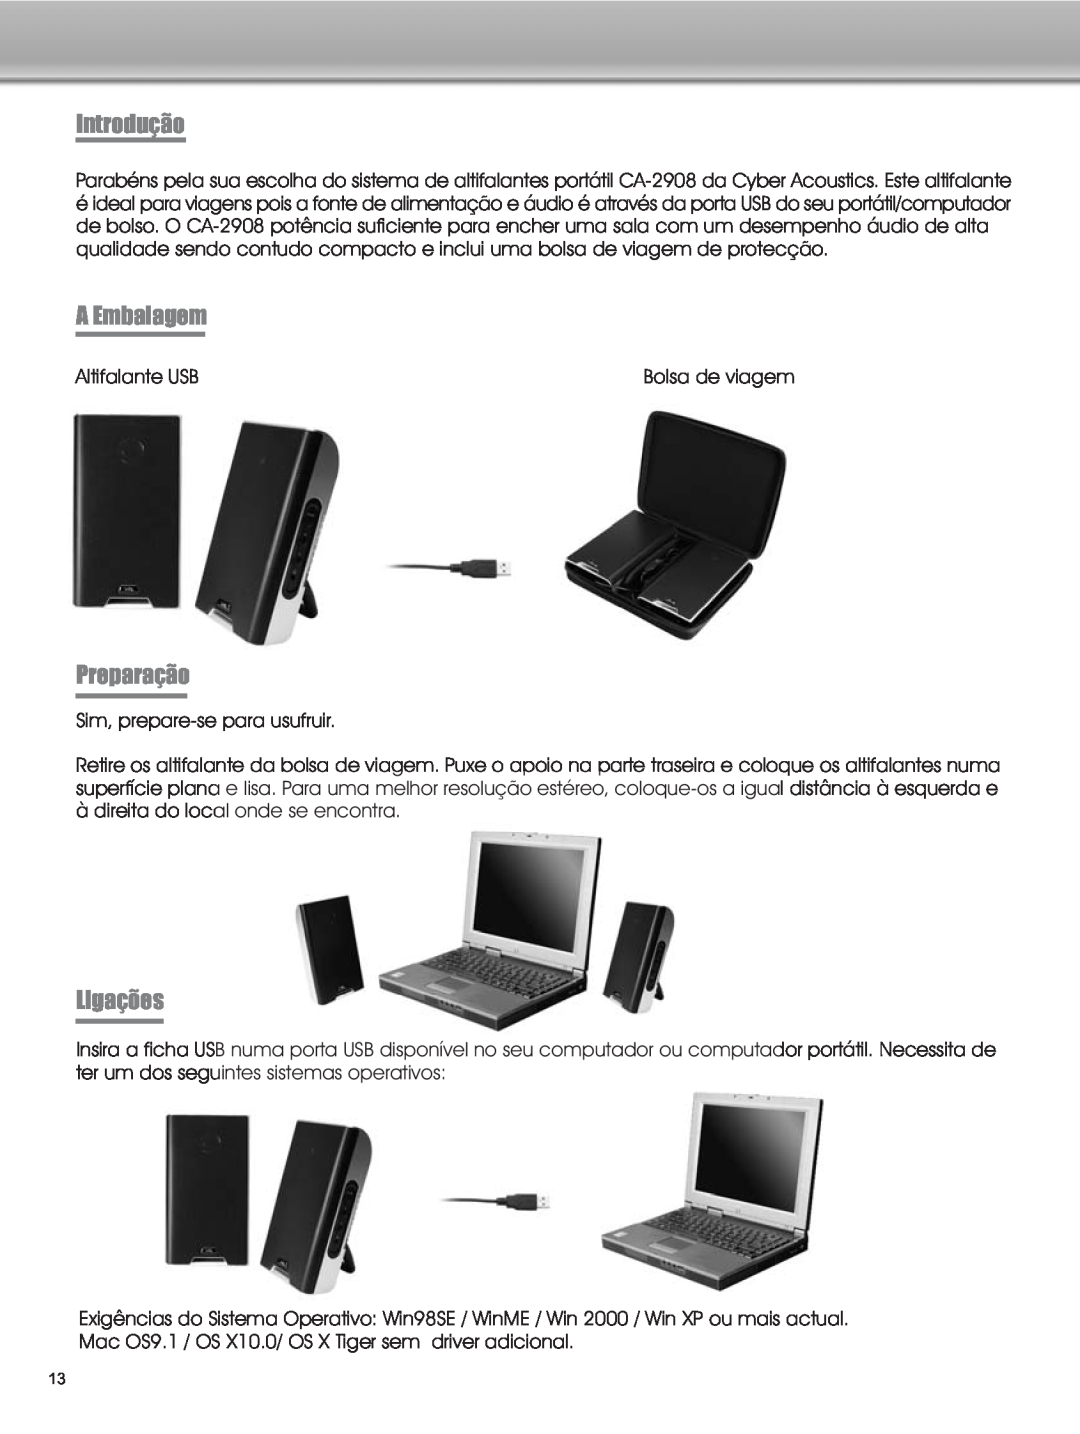 Cyber Acoustics CA-2908 manual Introdução, A Embalagem, Preparação, Ligações 